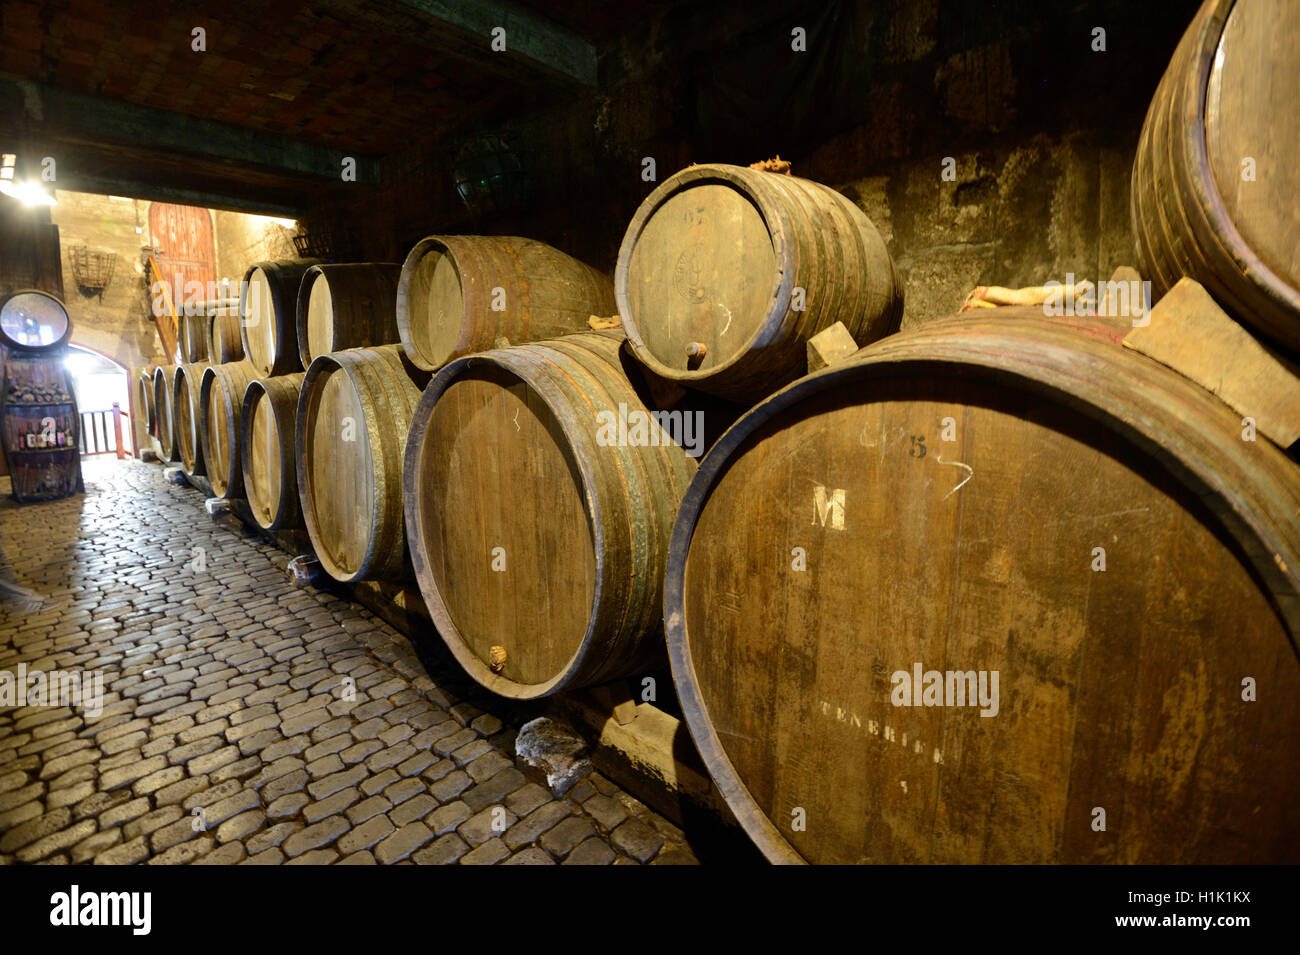 100 jahre alte Weinfaesser im Keller von Weingut, Teneriffa, Kanarische isole, Spanien Foto Stock